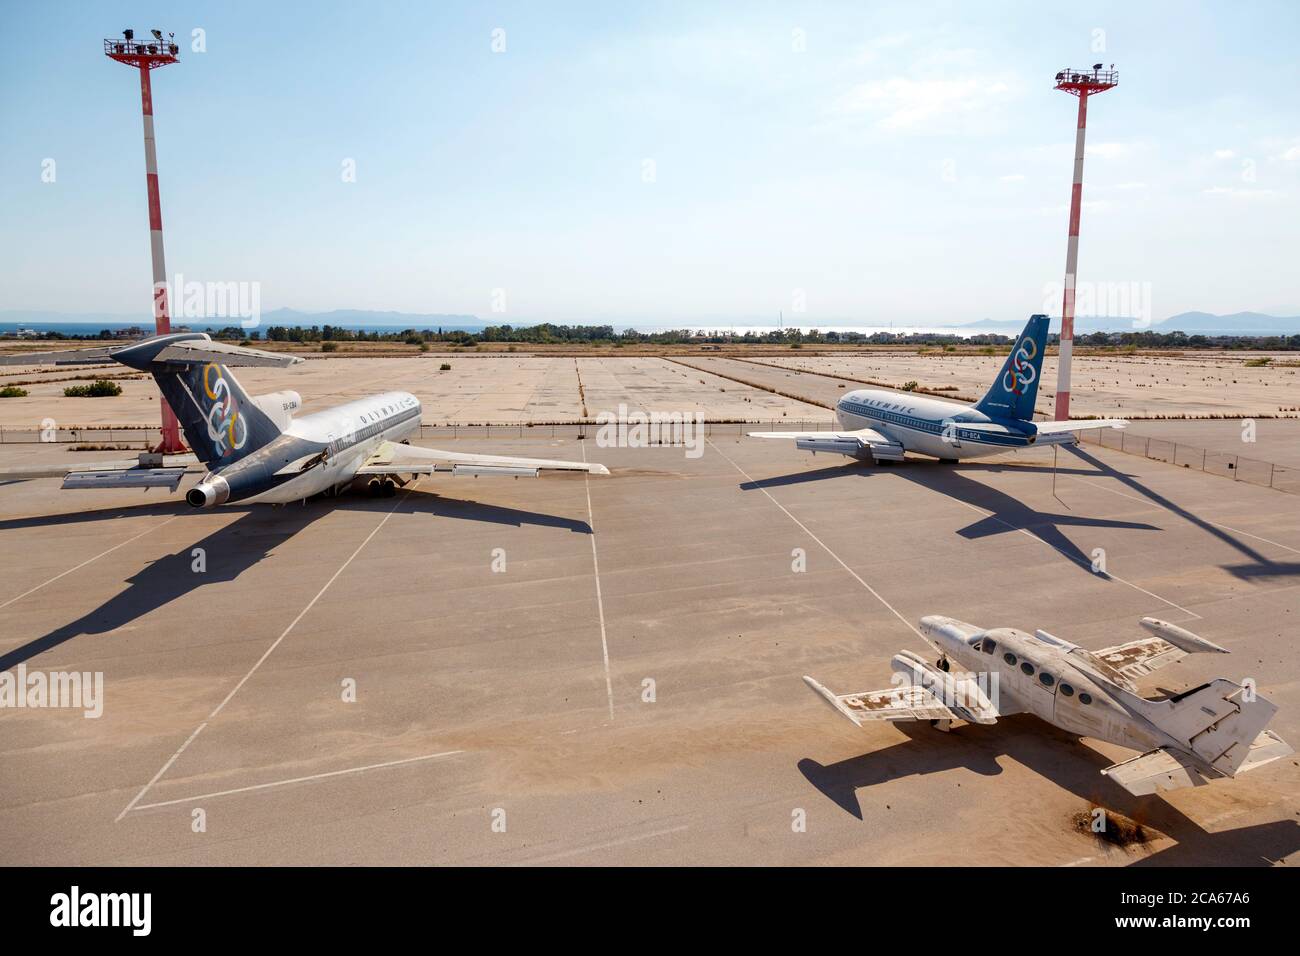 De vieux avions d'Olympic Airways abandonnés à l'ancien aéroport d'Athènes, dans le quartier d'Elliniko. L'aéroport n'est plus utilisé depuis 2001 Banque D'Images